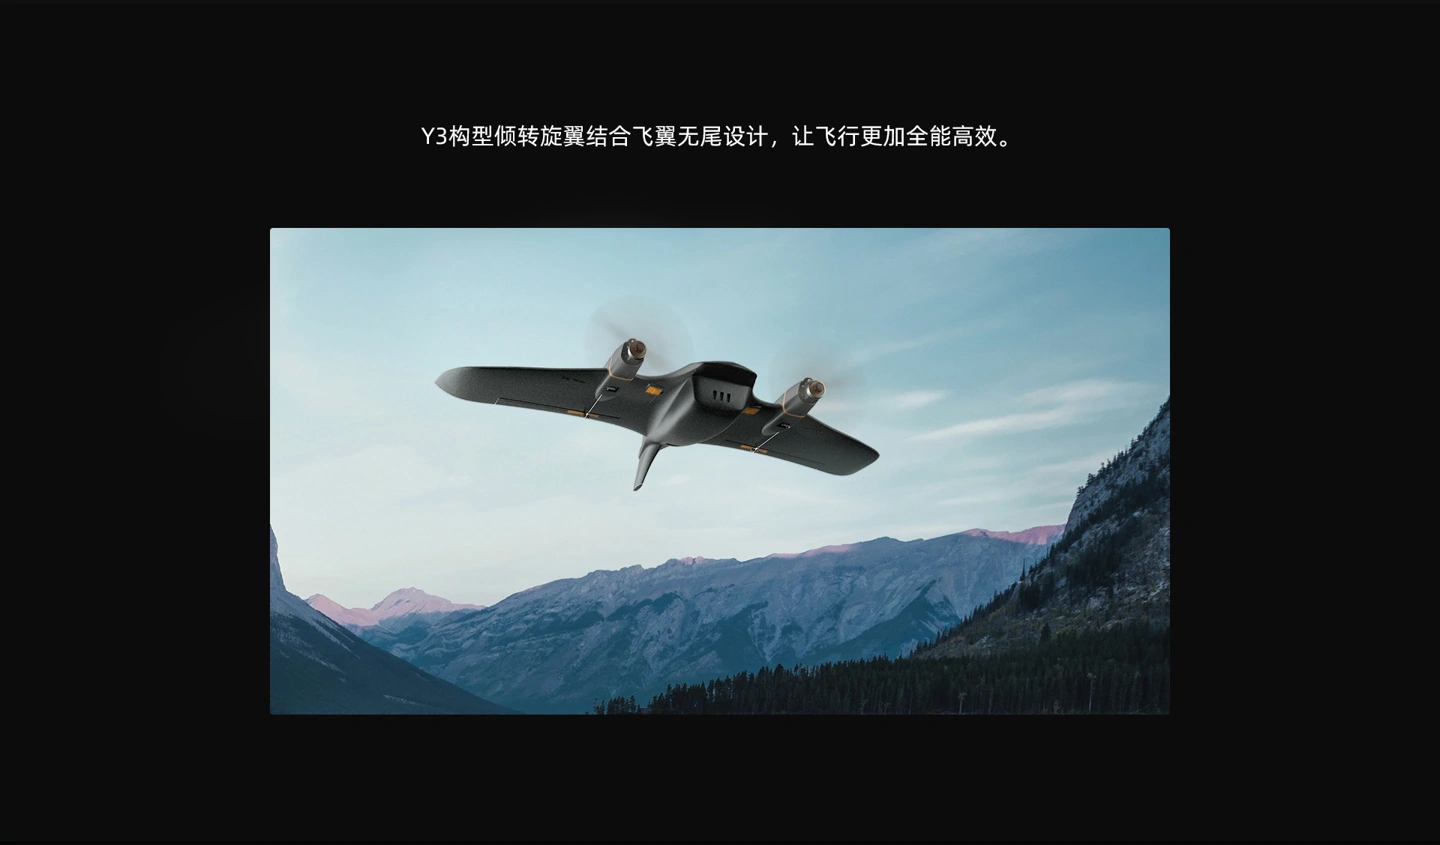 小米生态成员飞米将于 7 月 31 日发布 FIMI Manta VTOL 固定